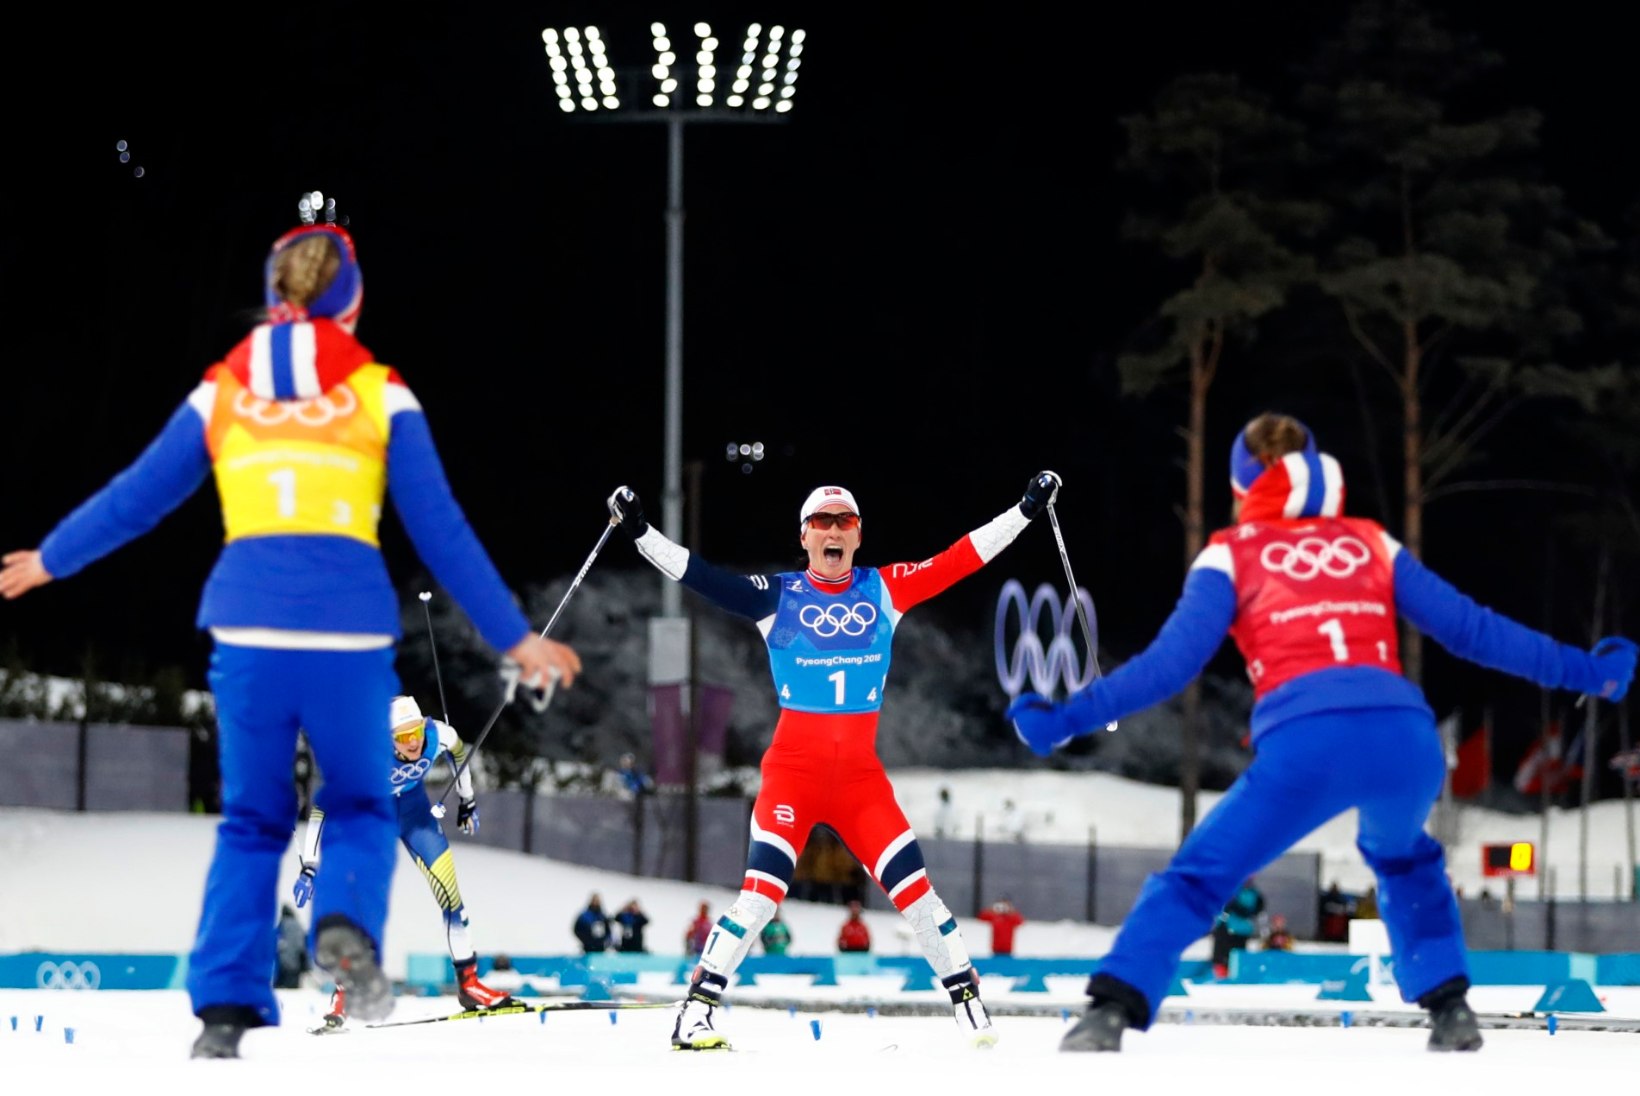 VÕIMAS! Ajalugu teinud igihaljas Björgen vedas Norra olümpiavõitjaks ja tõusis läbi aegade üheks vägevamaks